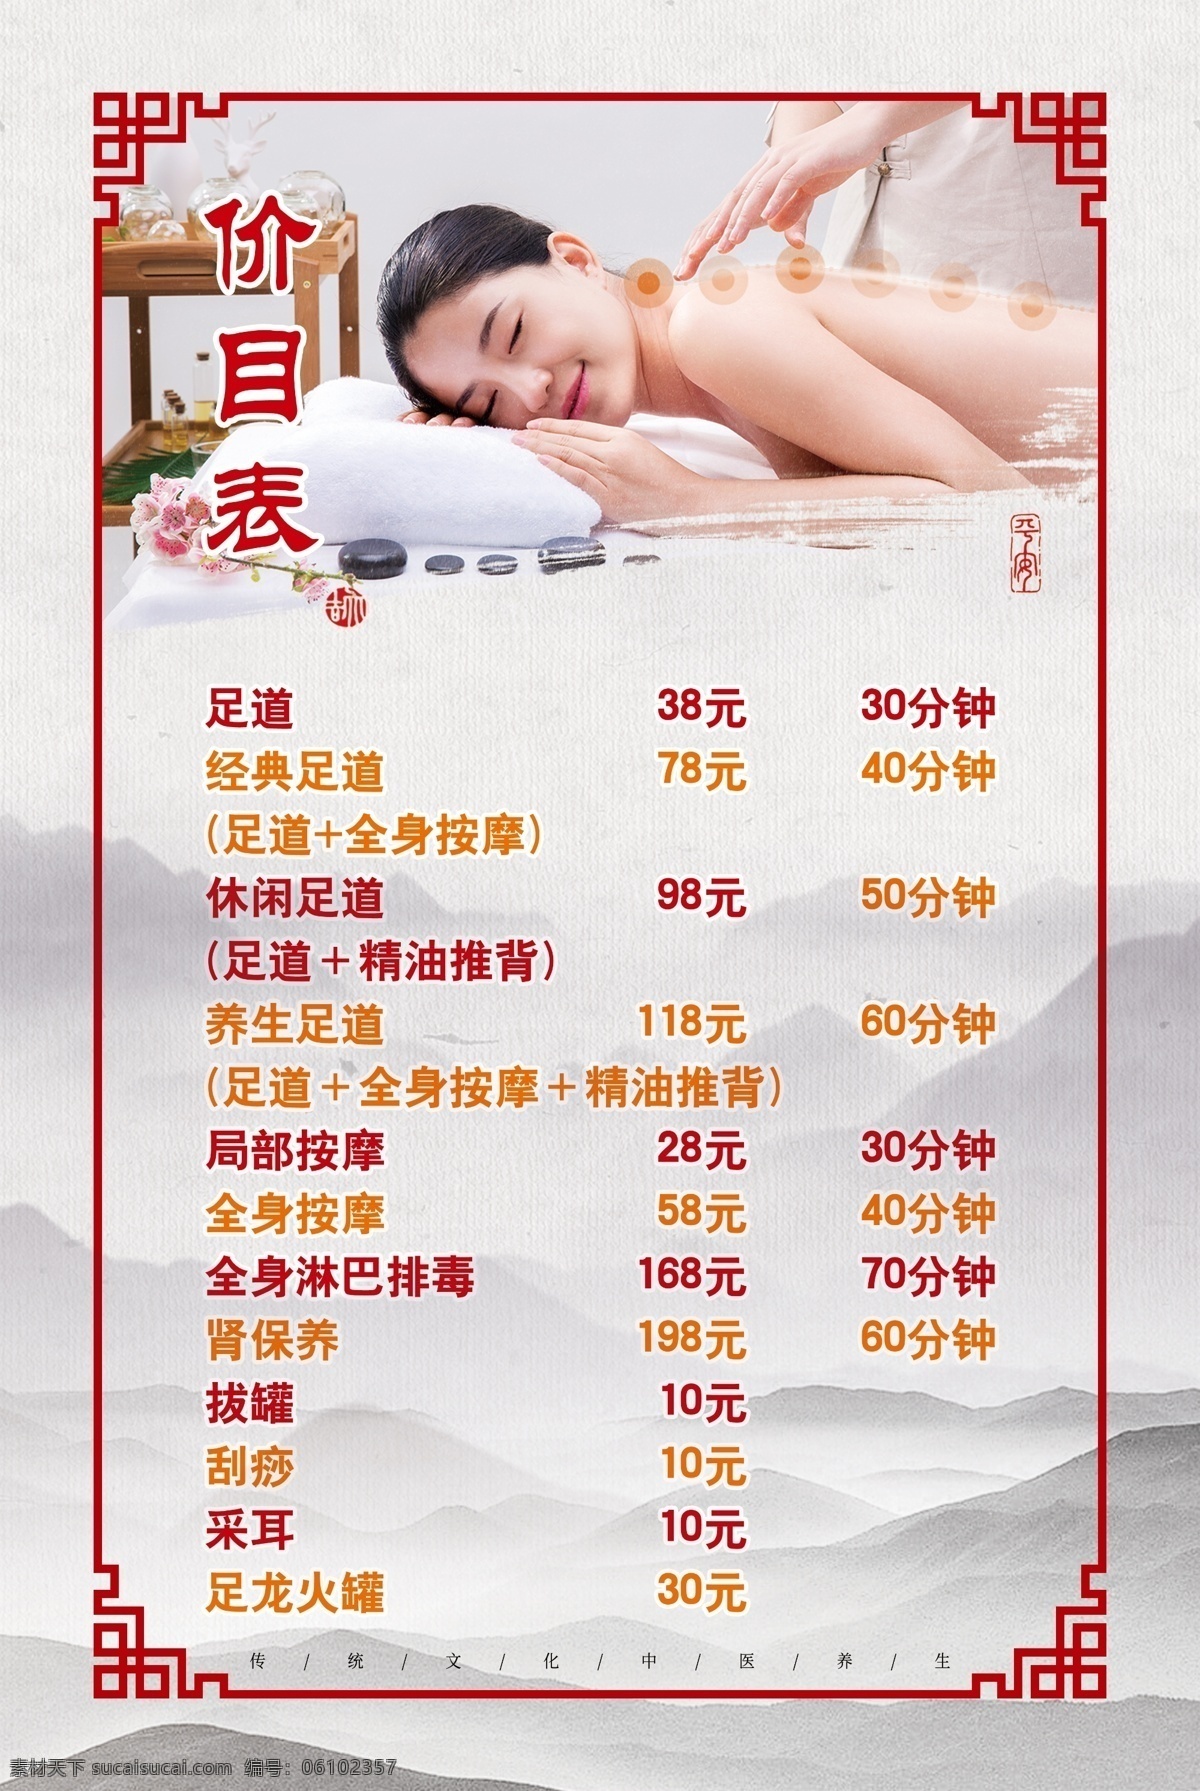 足疗 养身 价目表 展板 写真 广告 按摩 足浴 足道 中国风 写真户外其他 分层